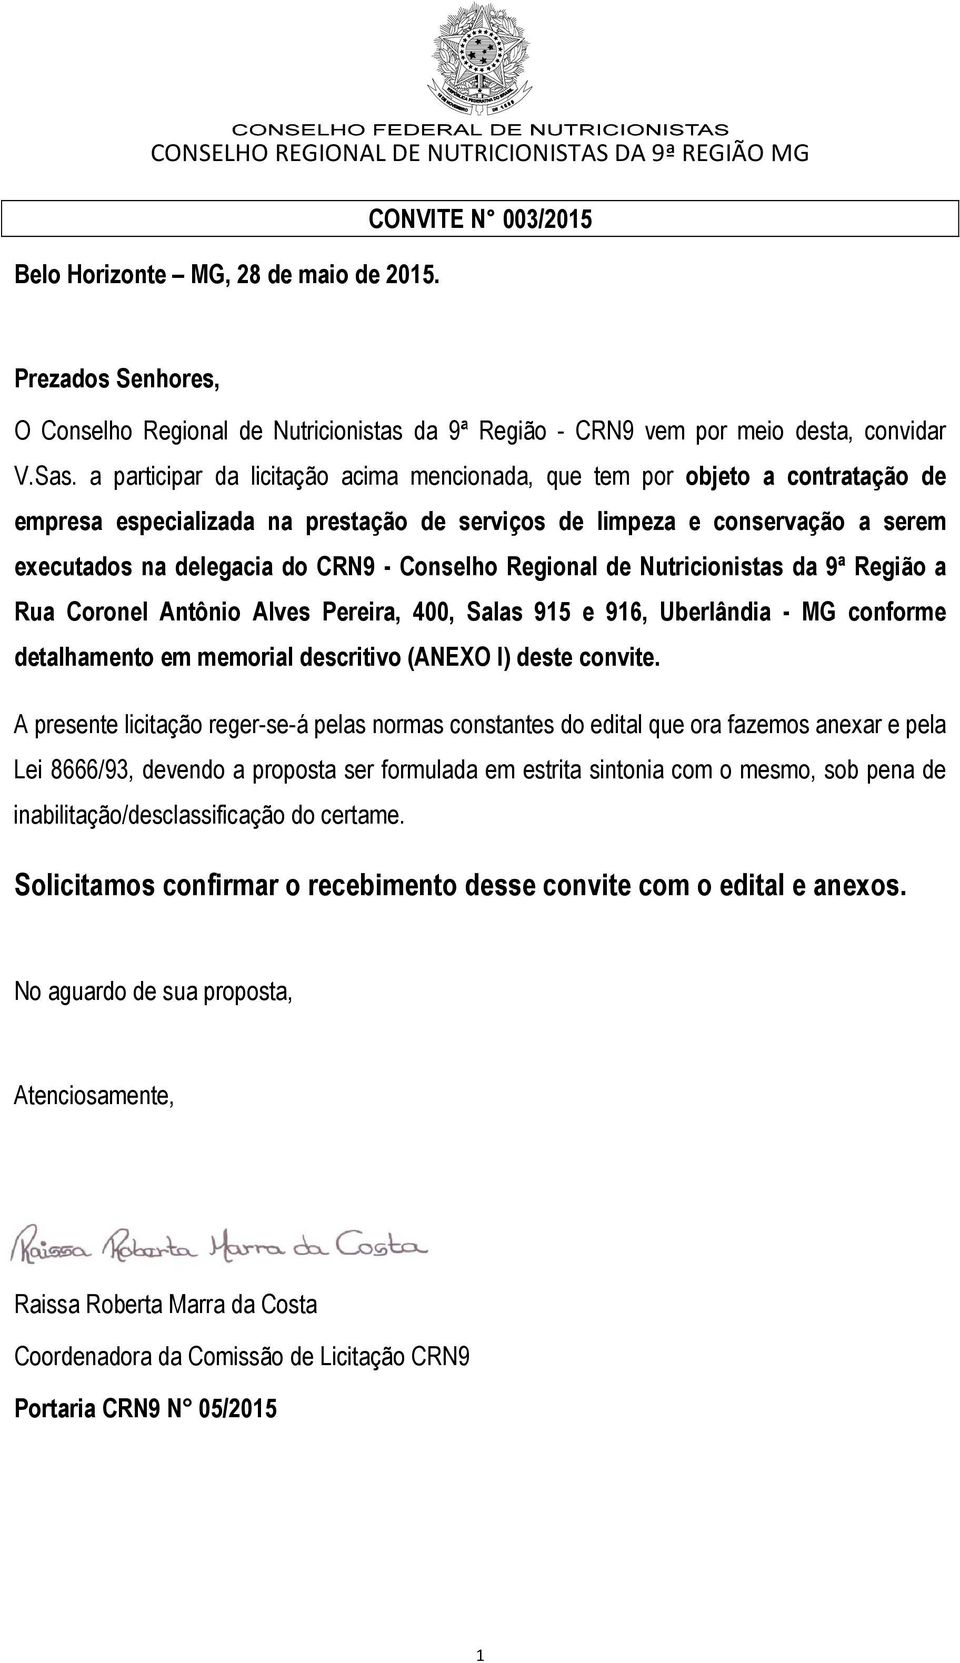 Conselho Regional de Nutricionistas da 9ª Região a Rua Coronel Antônio Alves Pereira, 400, Salas 915 e 916, Uberlândia - MG conforme detalhamento em memorial descritivo (ANEXO I) deste convite.